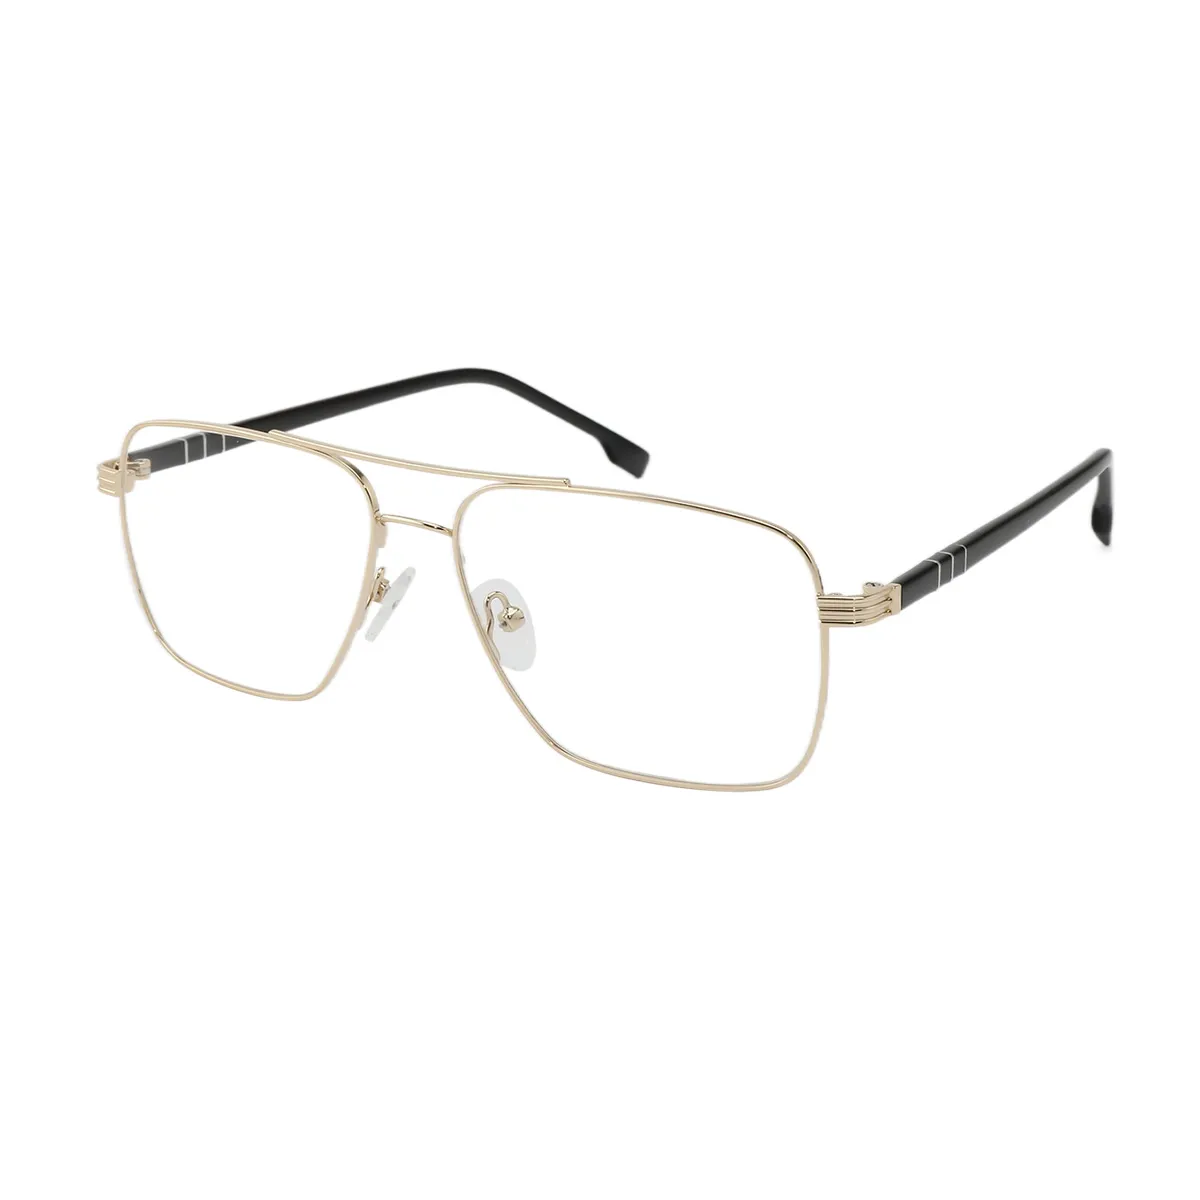 Stefan - Square Gold Glasses for Men - EFE